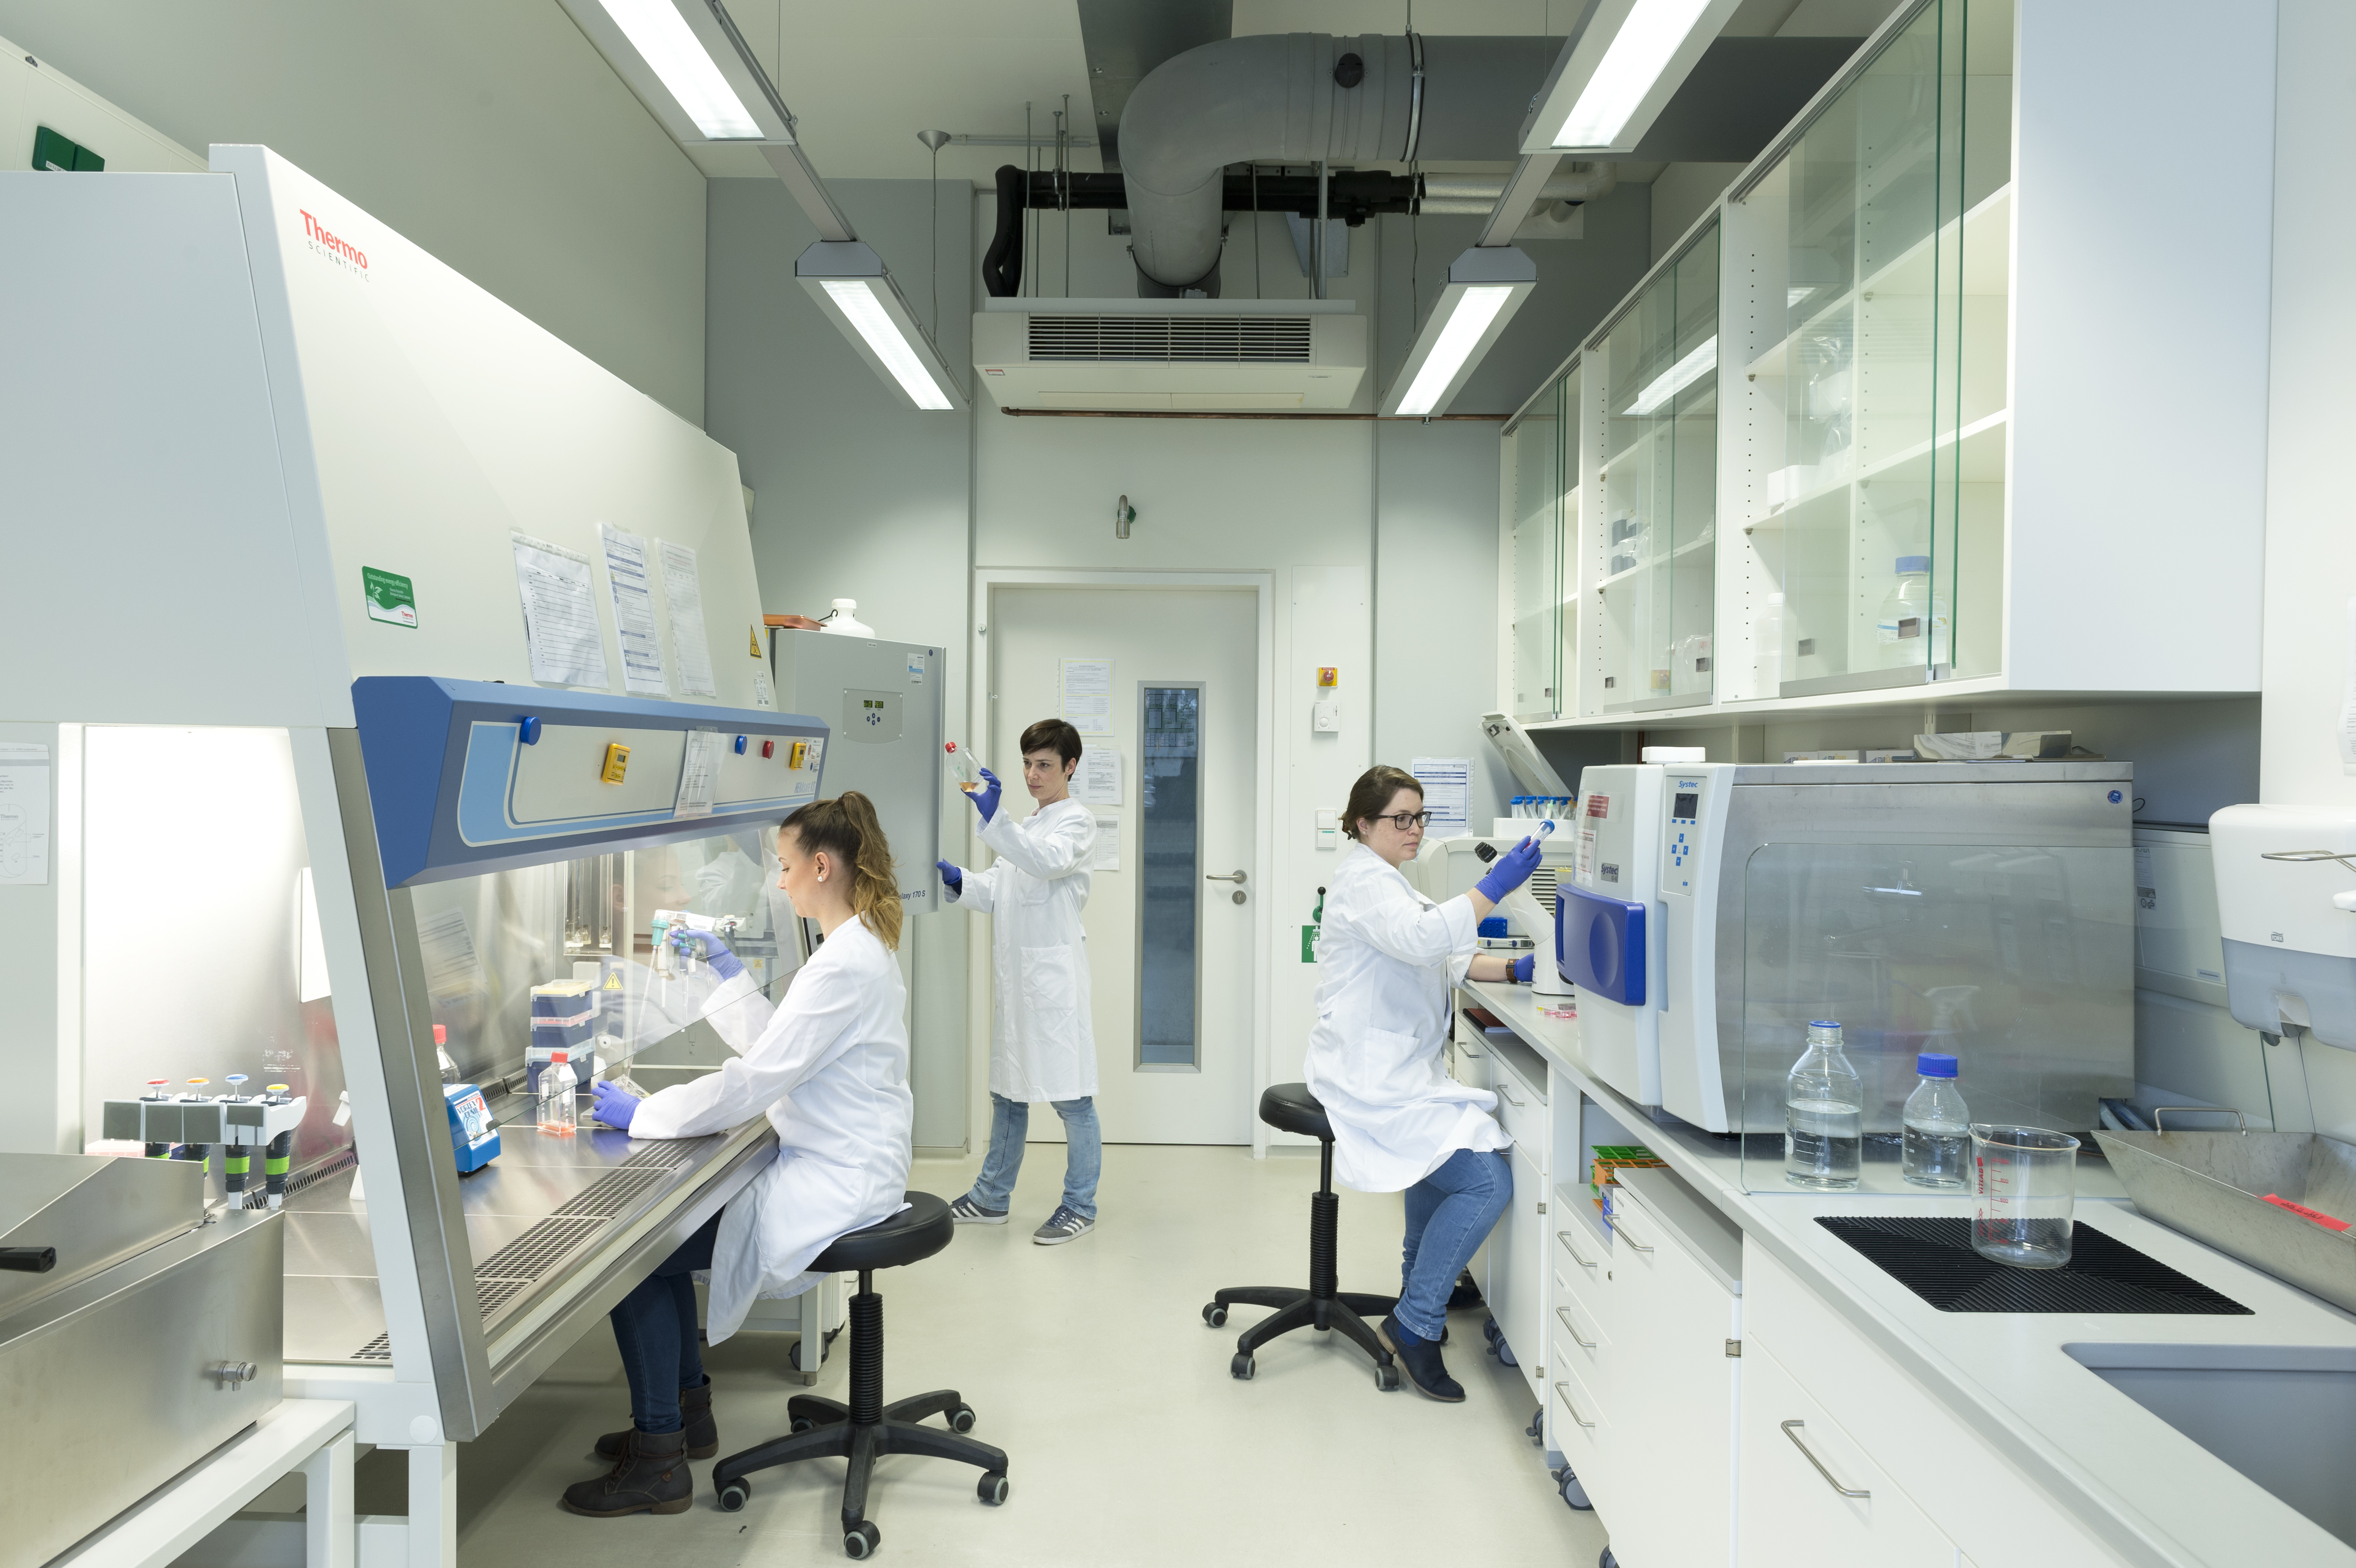 Drei Wissenschaftlern in Laborkitteln arbeiten in einem Labor. Eine Person sitzt an einem Mikroskop, eine arbeitet an einer Sterilbank und eine steht an einem geöffneten Inkubator und betrachtet eine Zellkulturflasche. 